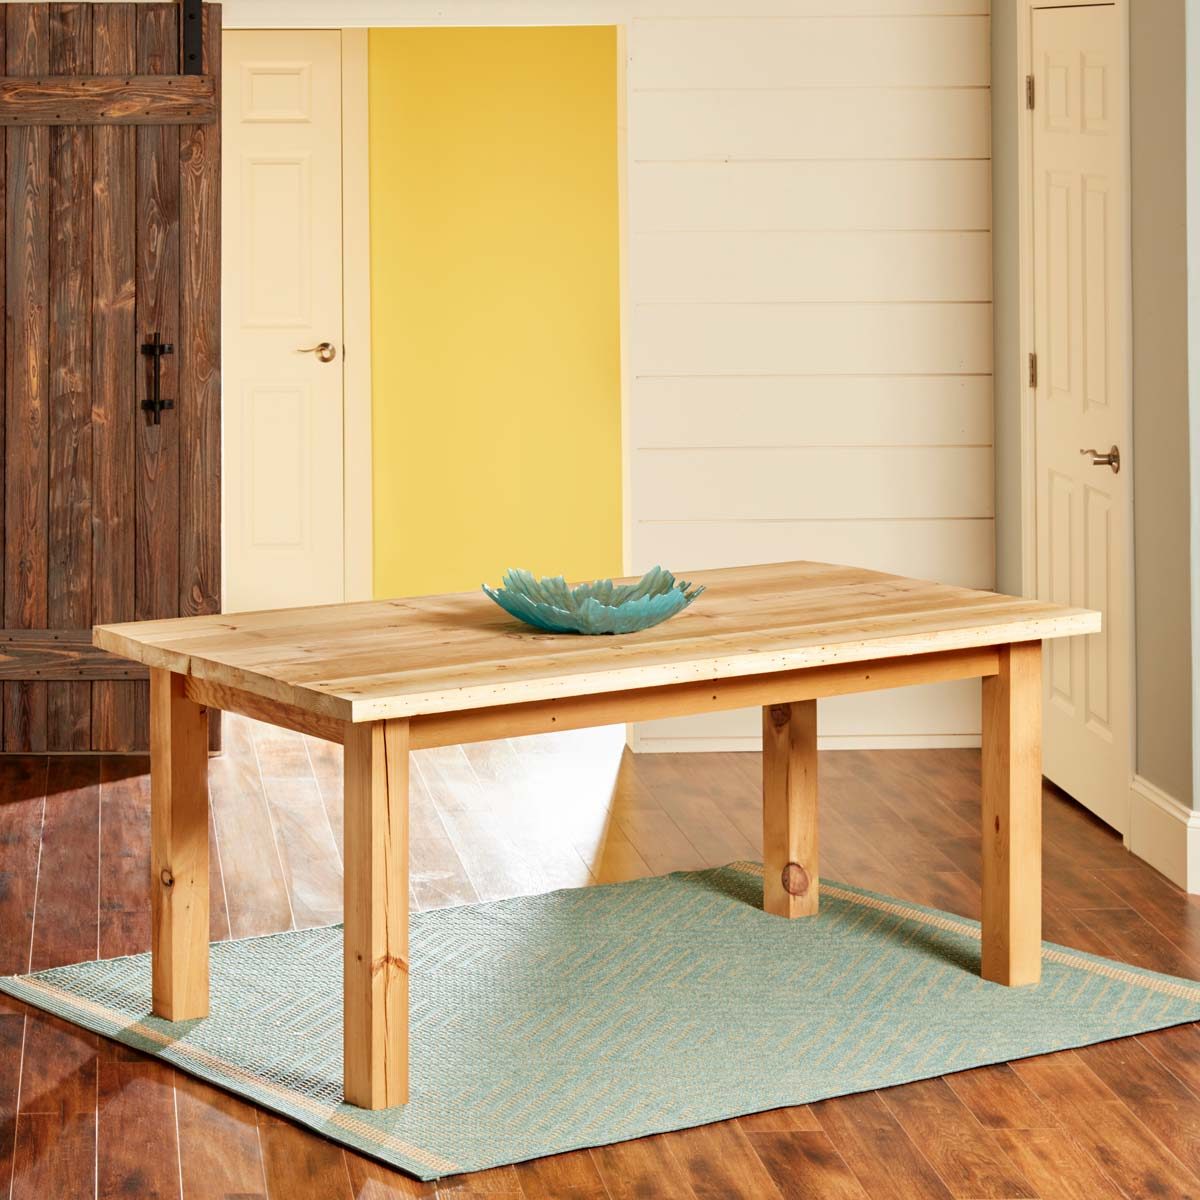 Build a Simple Reclaimed Wood Table | Family Handyman